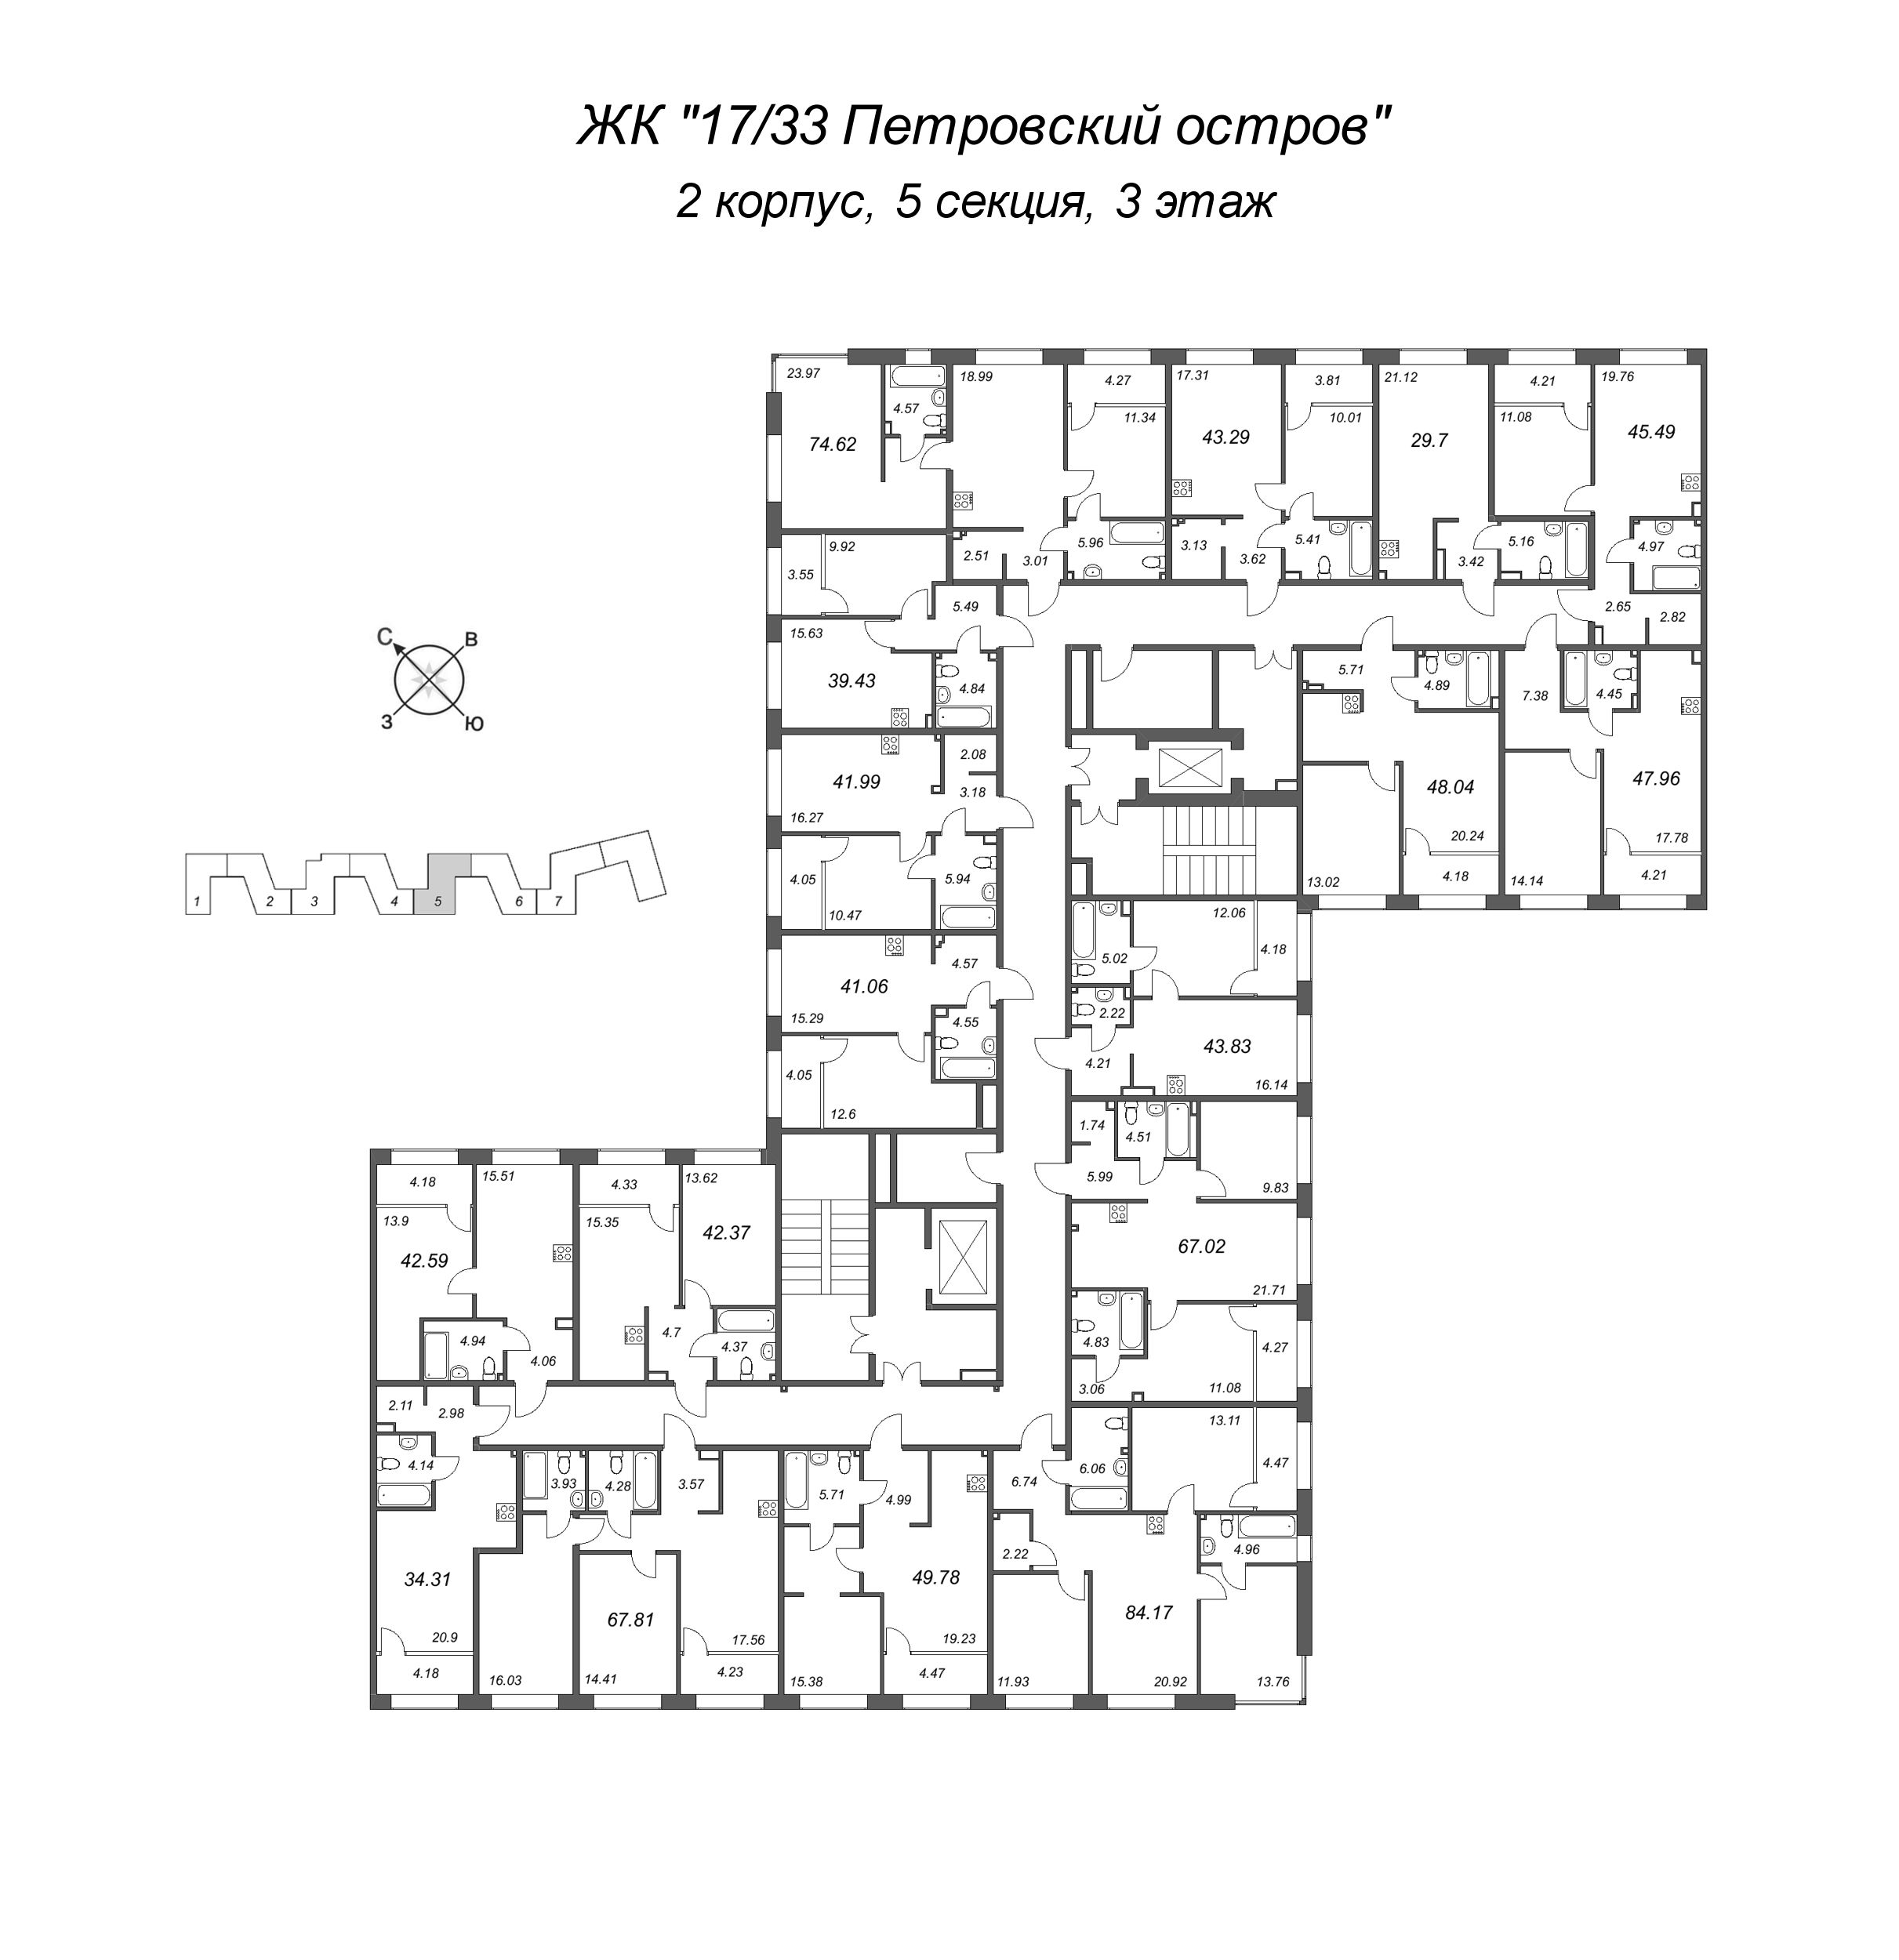 2-комнатная (Евро) квартира, 41.99 м² в ЖК "17/33 Петровский остров" - планировка этажа